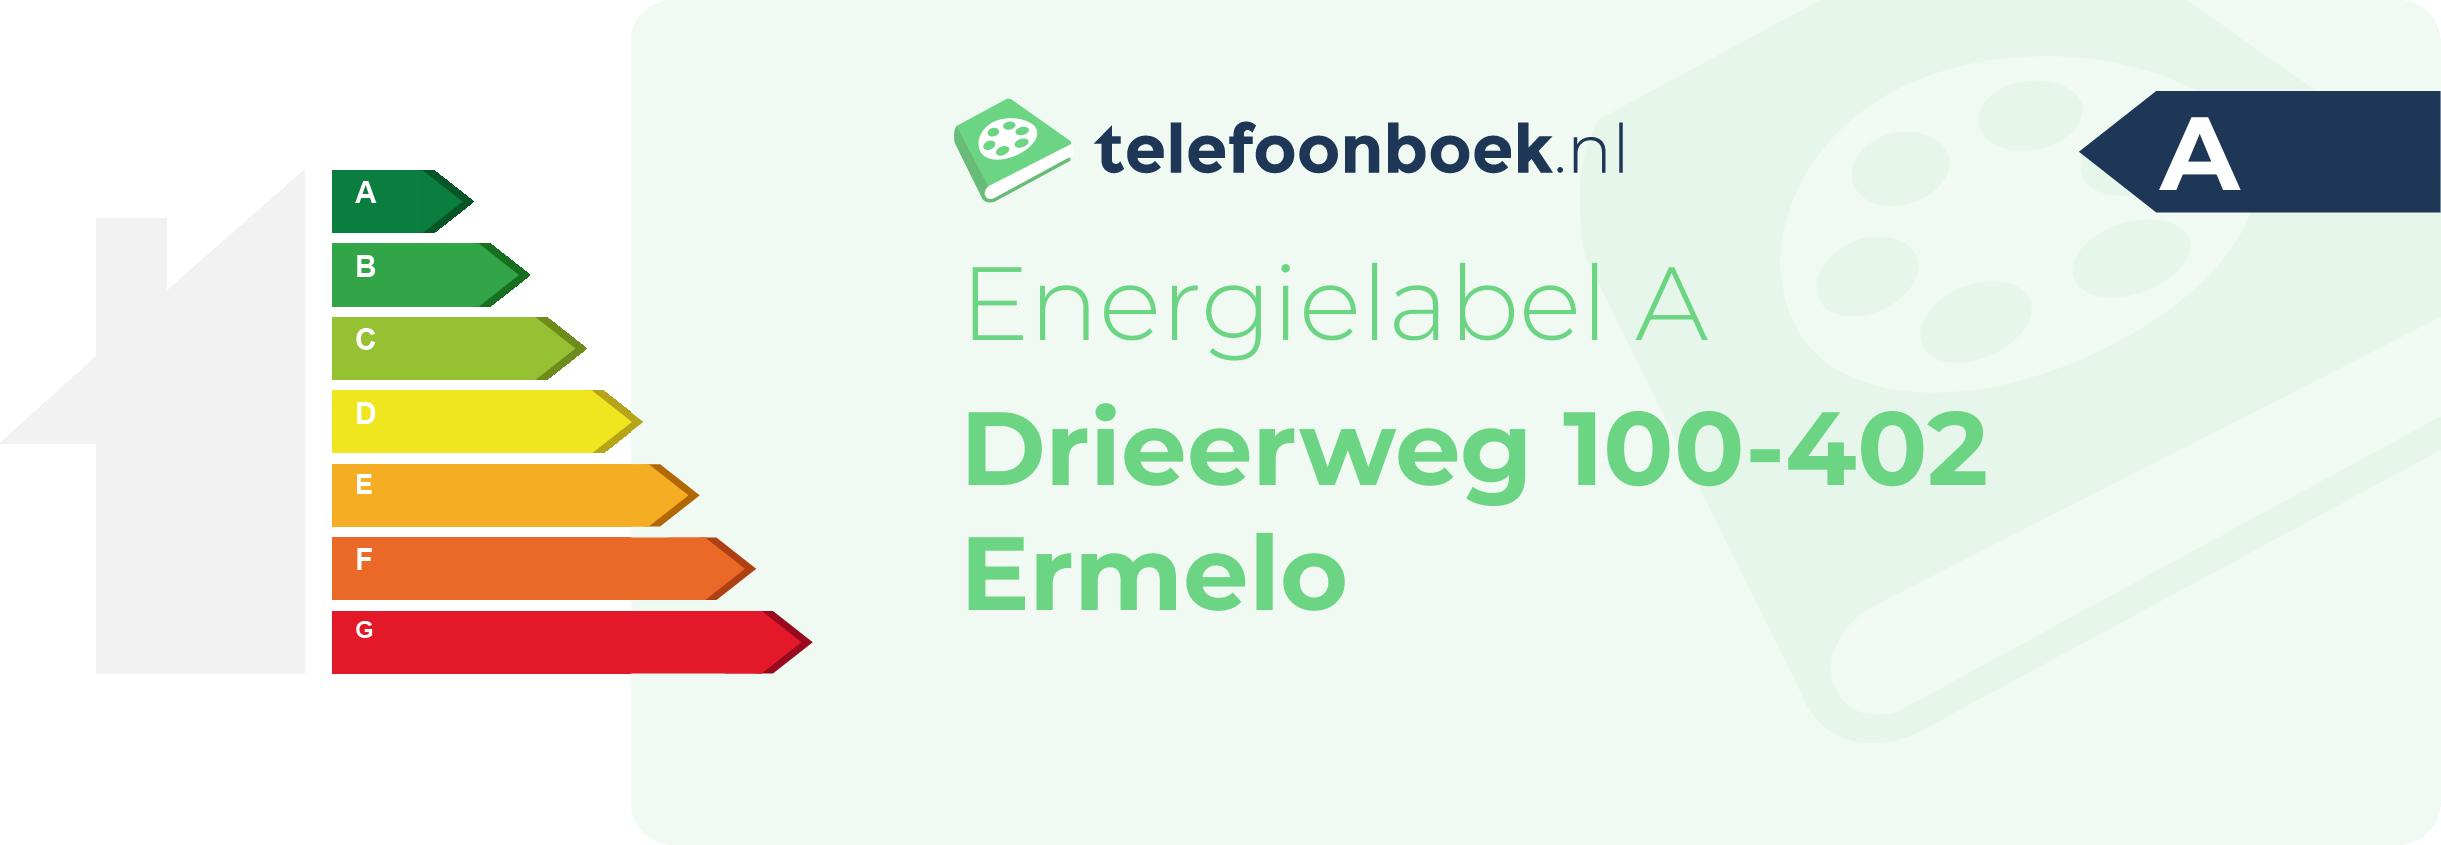 Energielabel Drieerweg 100-402 Ermelo